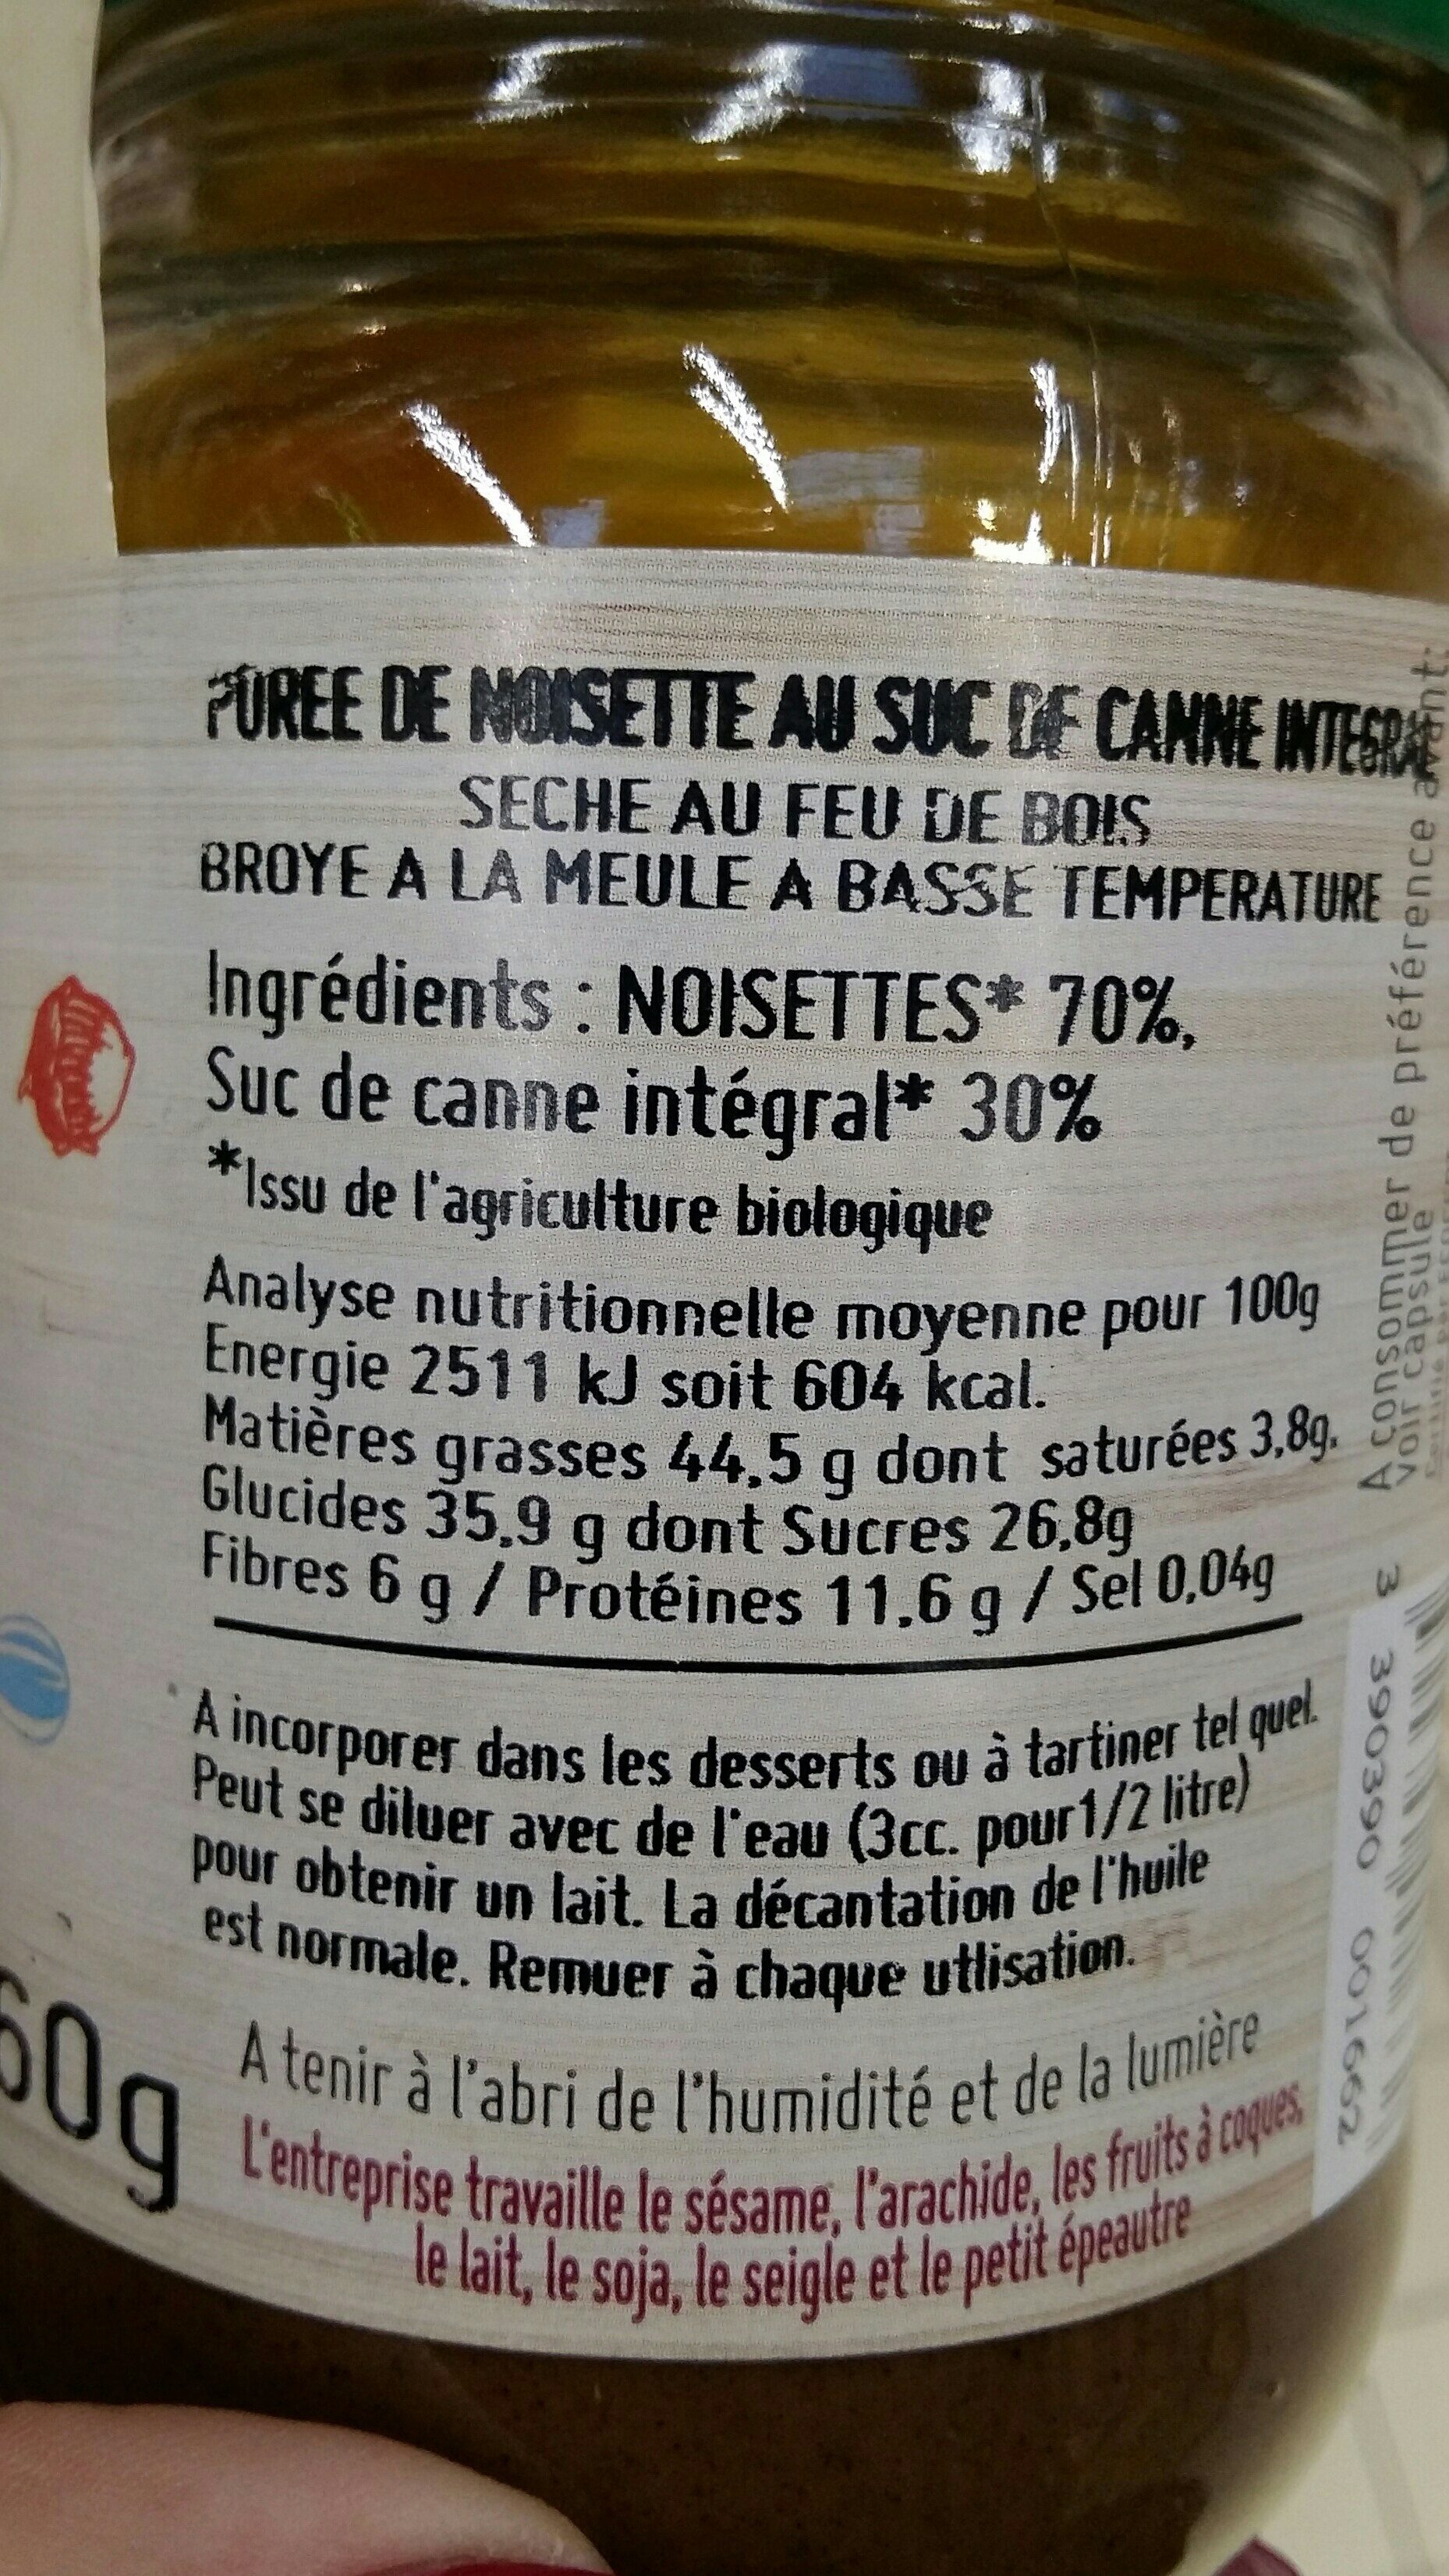 Noisette au suc - Ingredients - fr